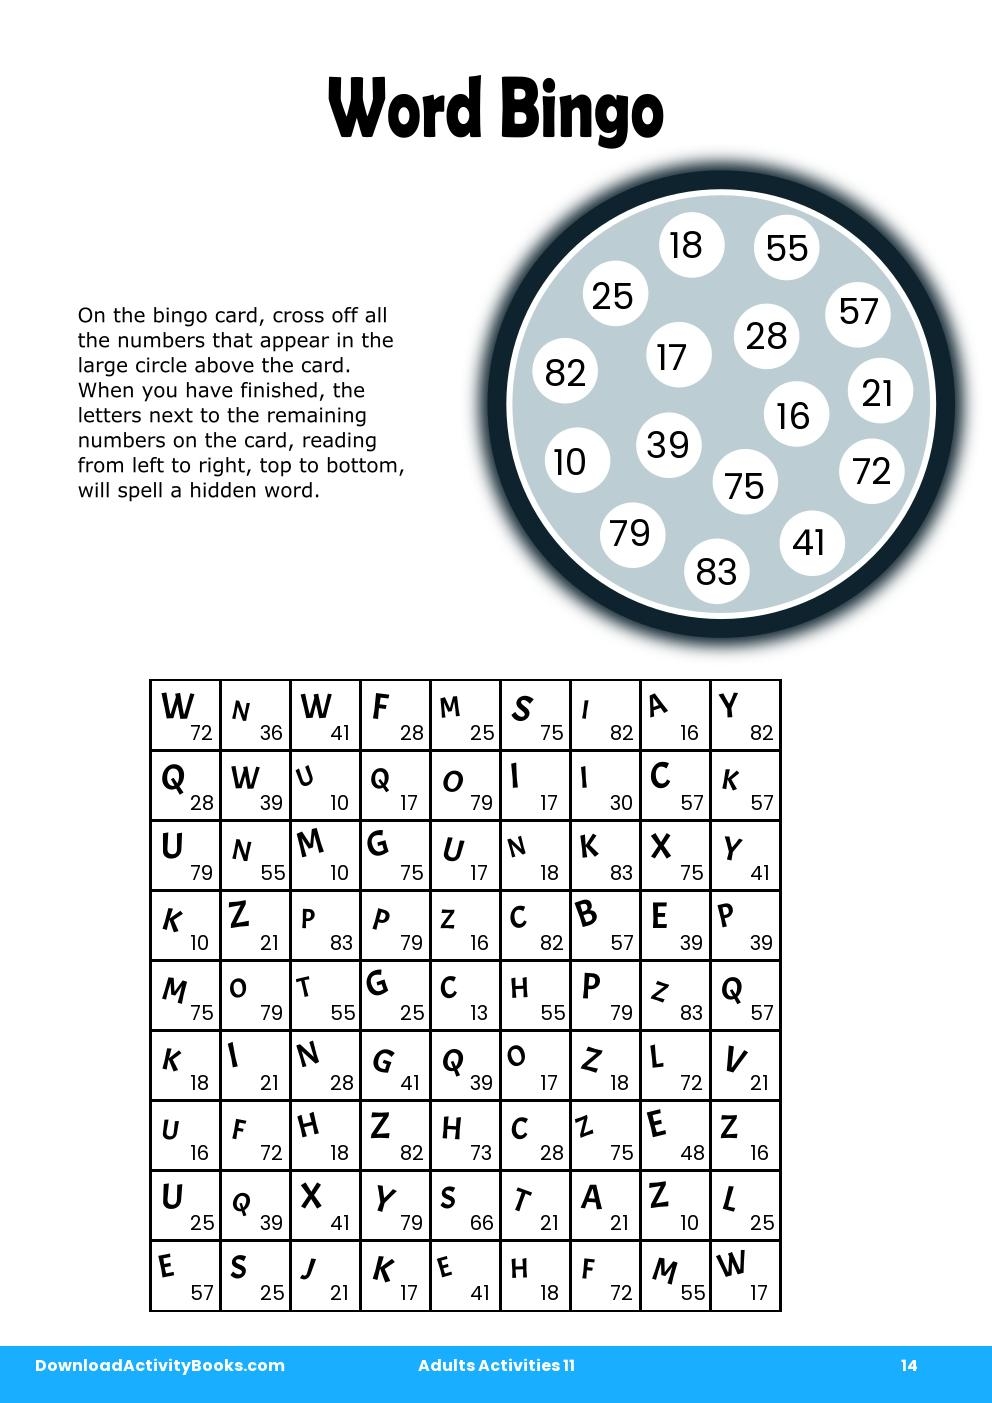 Word Bingo in Adults Activities 11